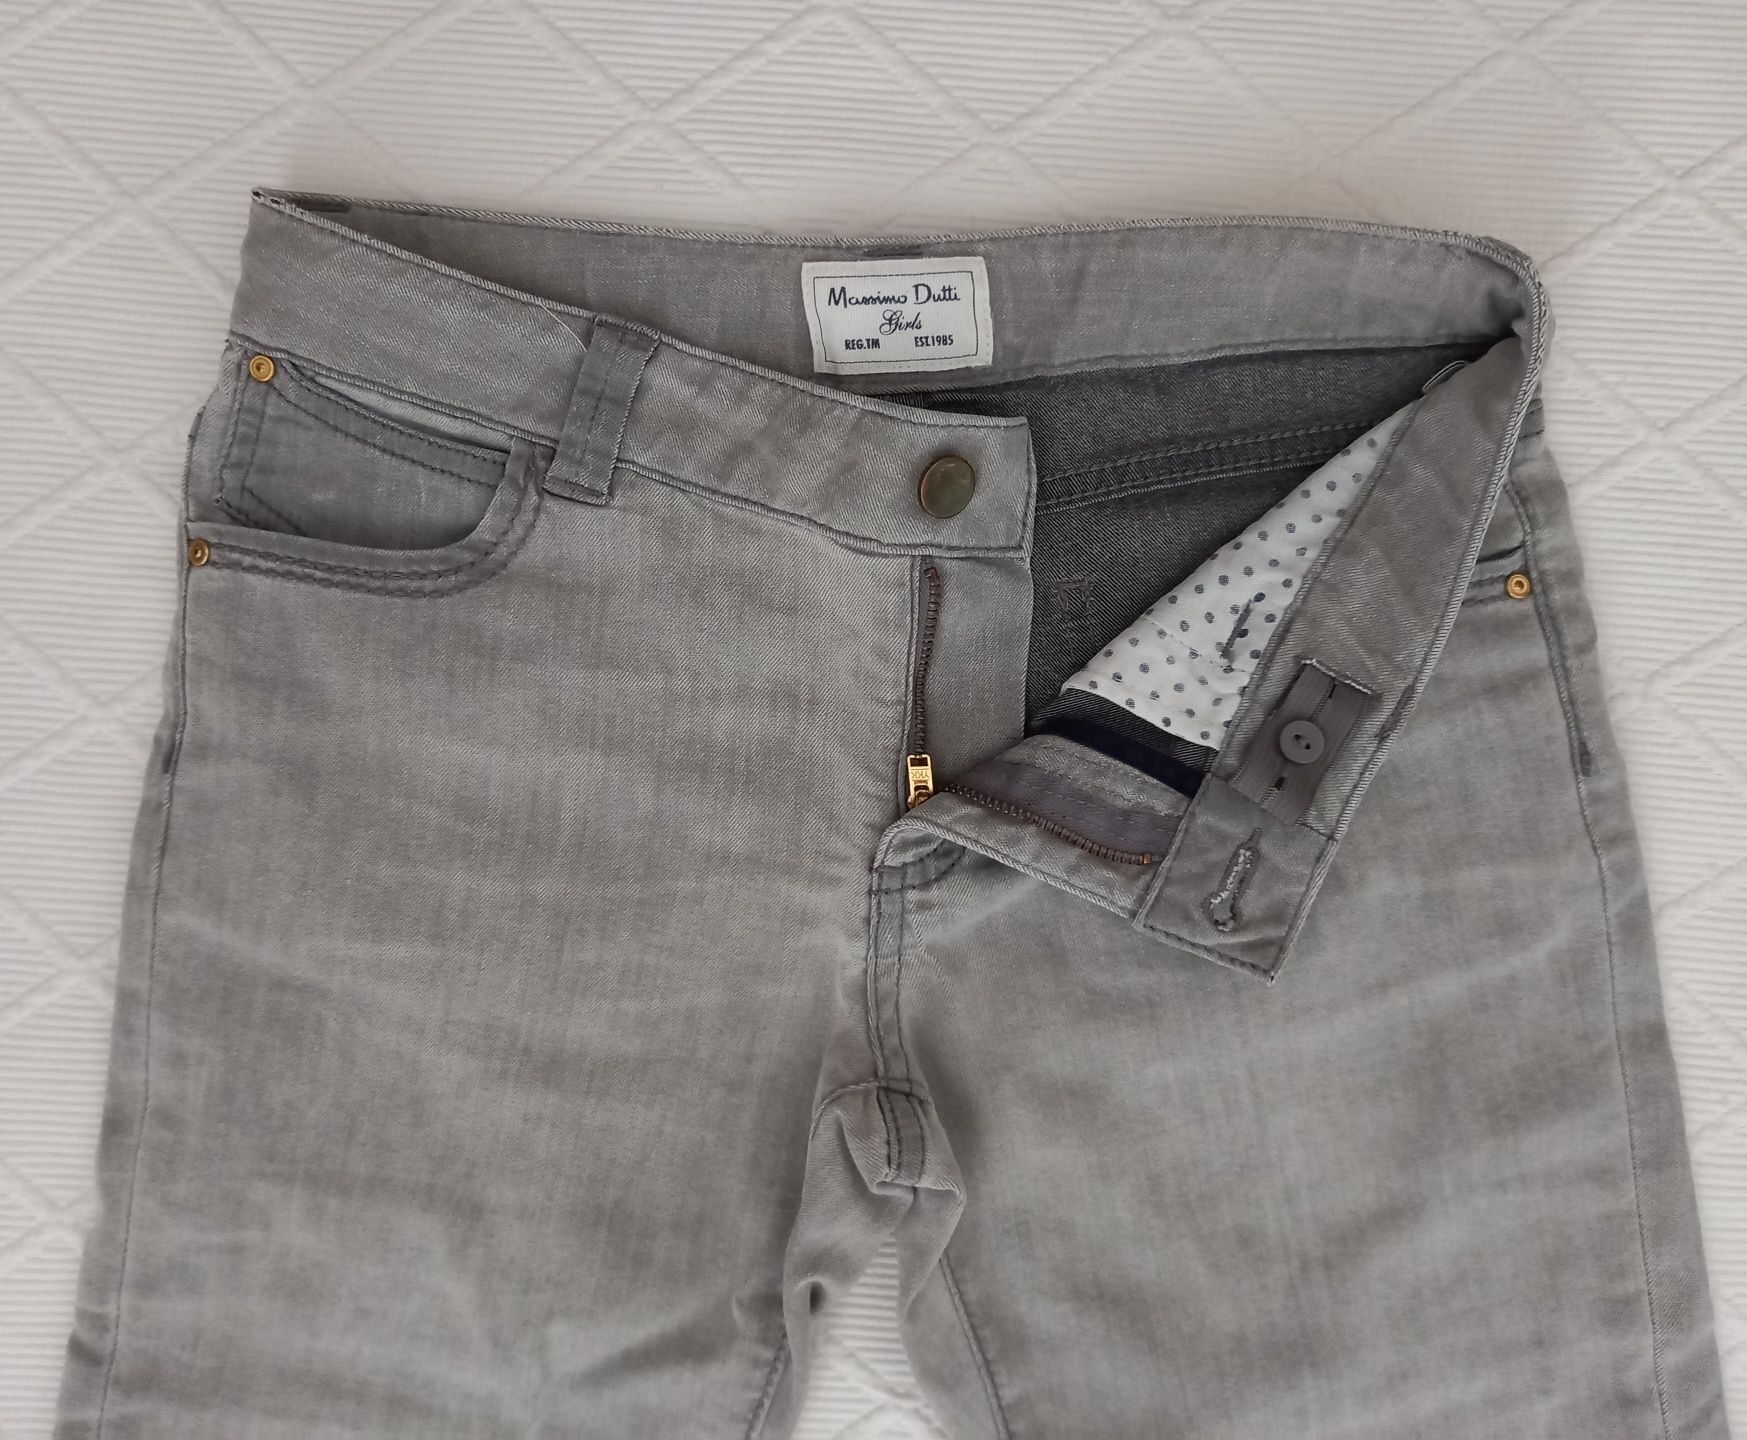 Calças / Jeans Massimo Dutti / blusas rapariga 11/12 anos (desde 3€)